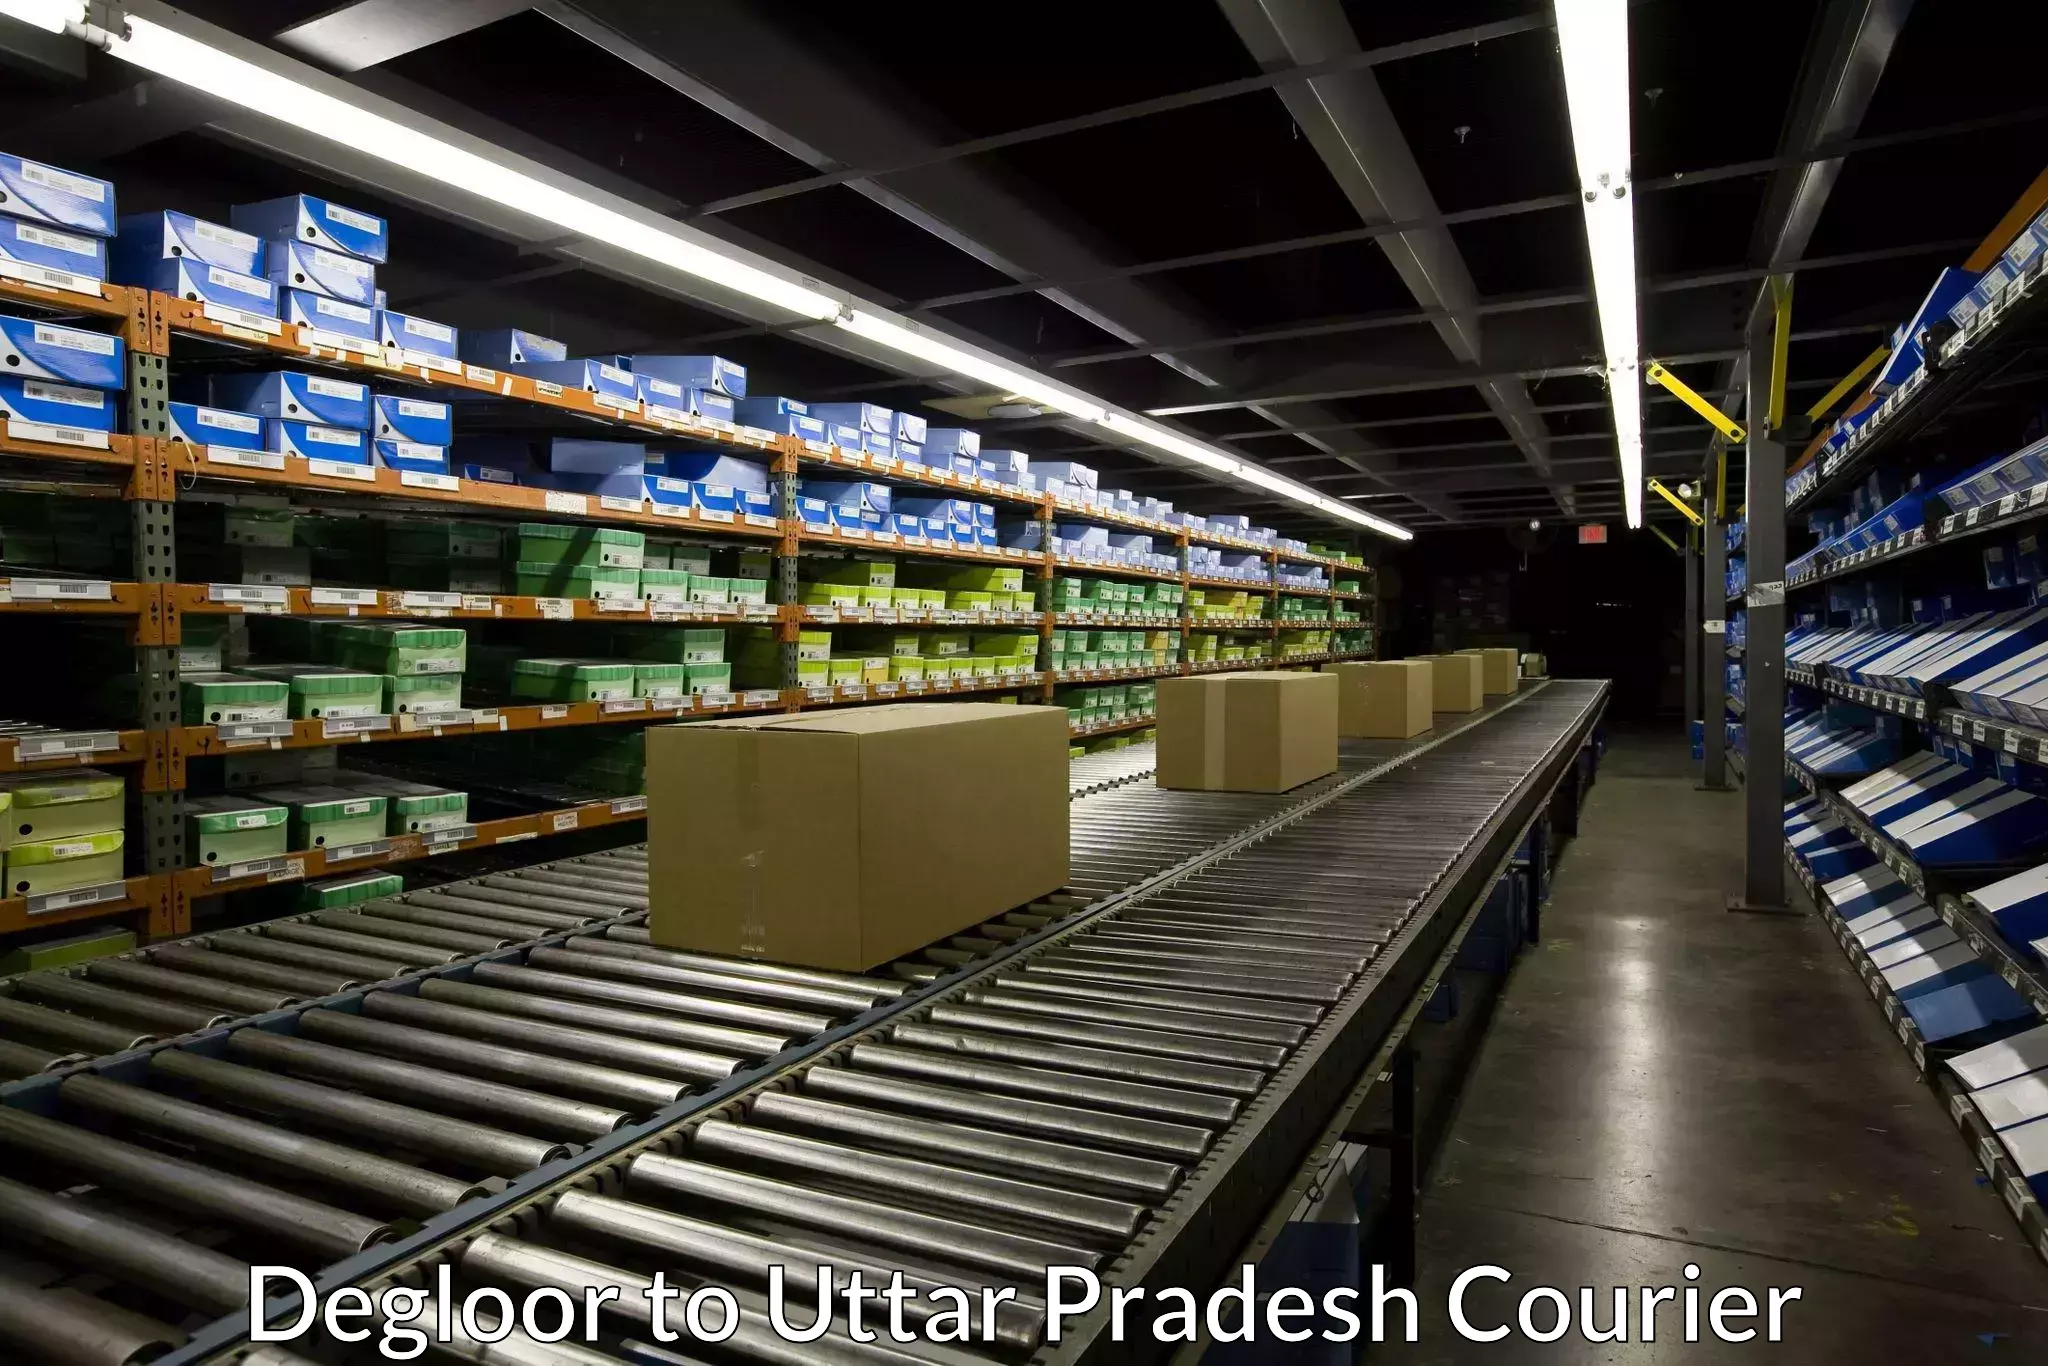 Efficient freight transportation Degloor to Uttar Pradesh